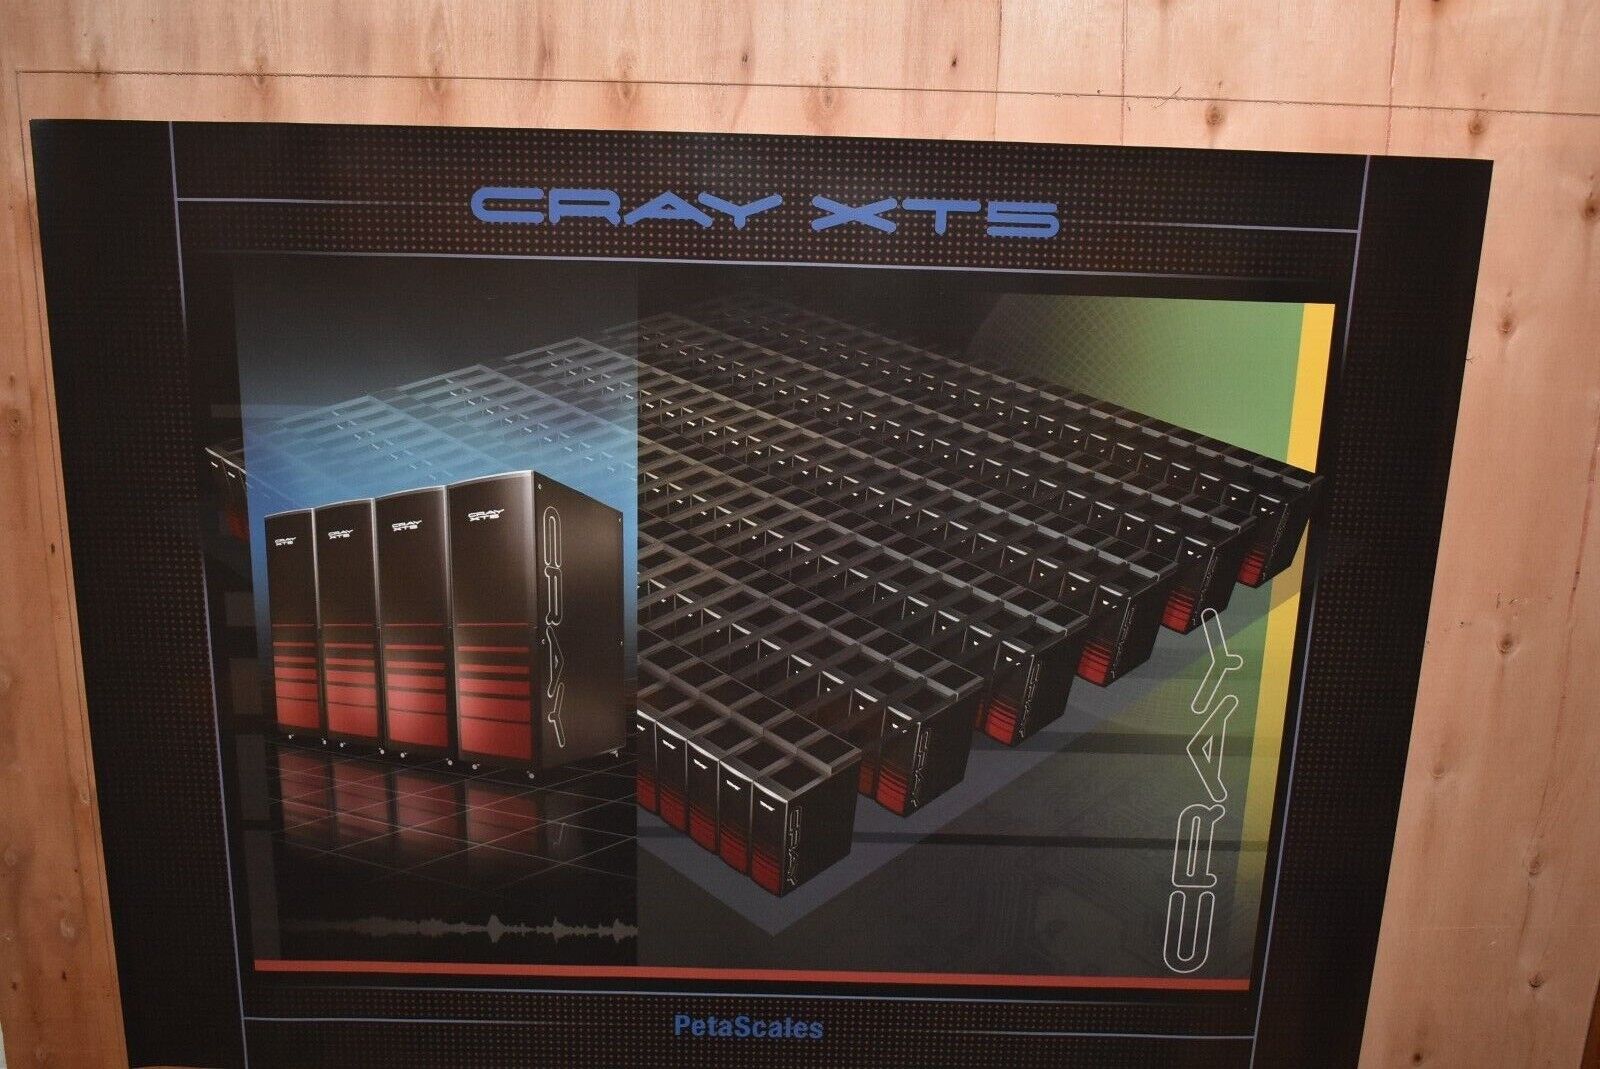 Cray XT5 Petascale Supercomputer Poster Cray Inc/Cray Research #V10